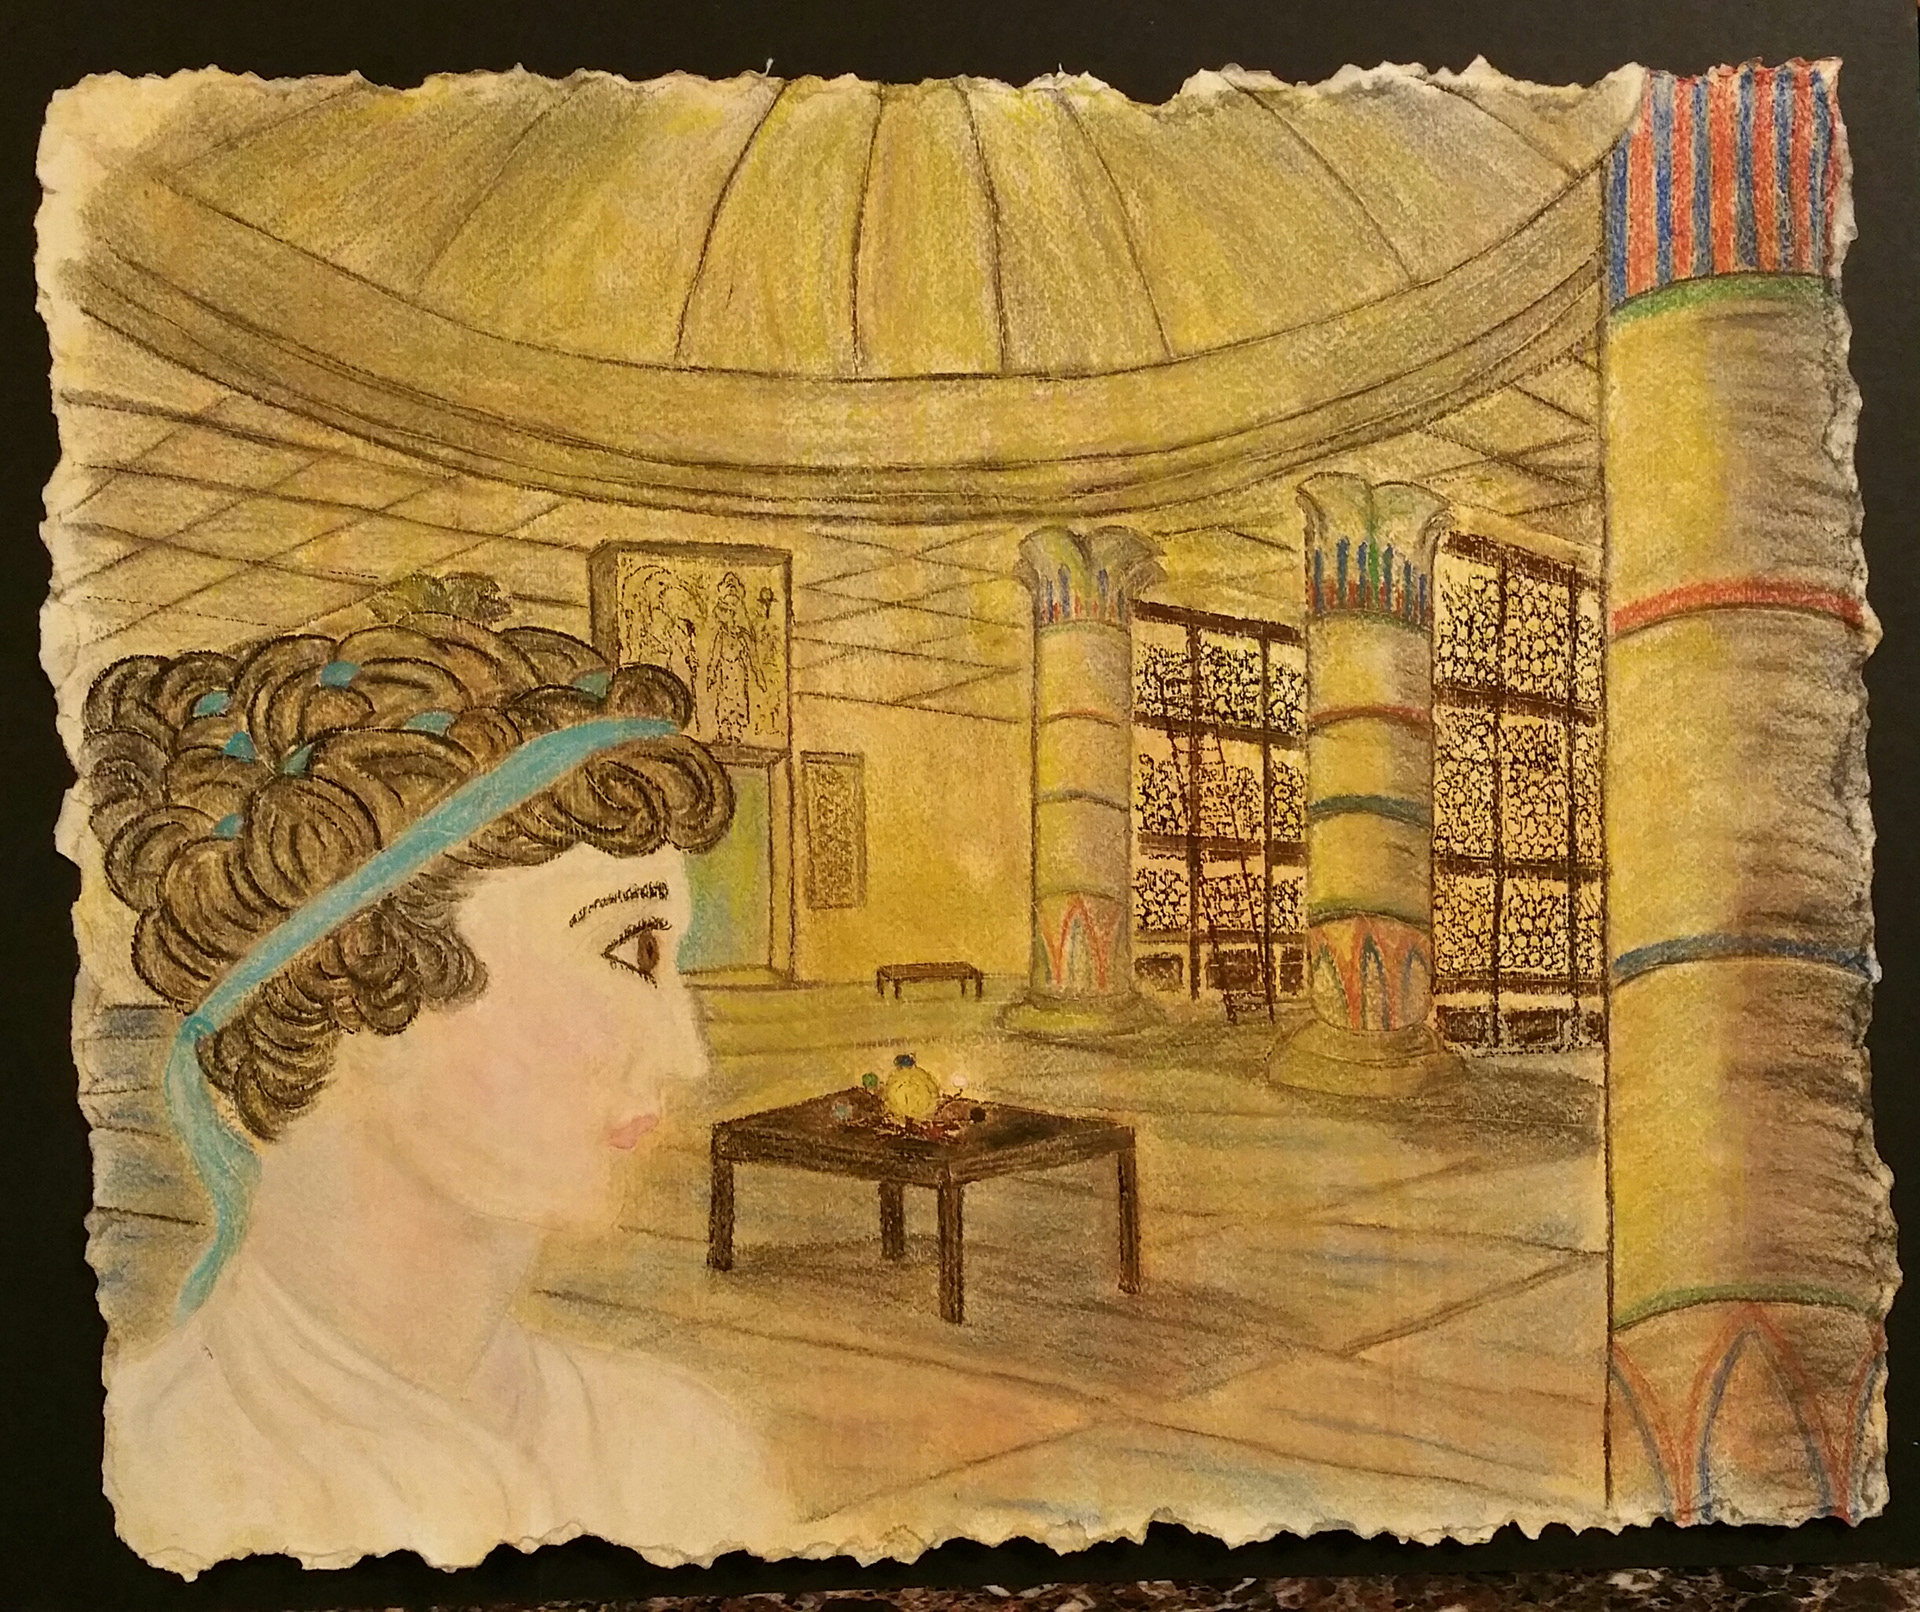 Описать рисунок в библиотеке александрии история